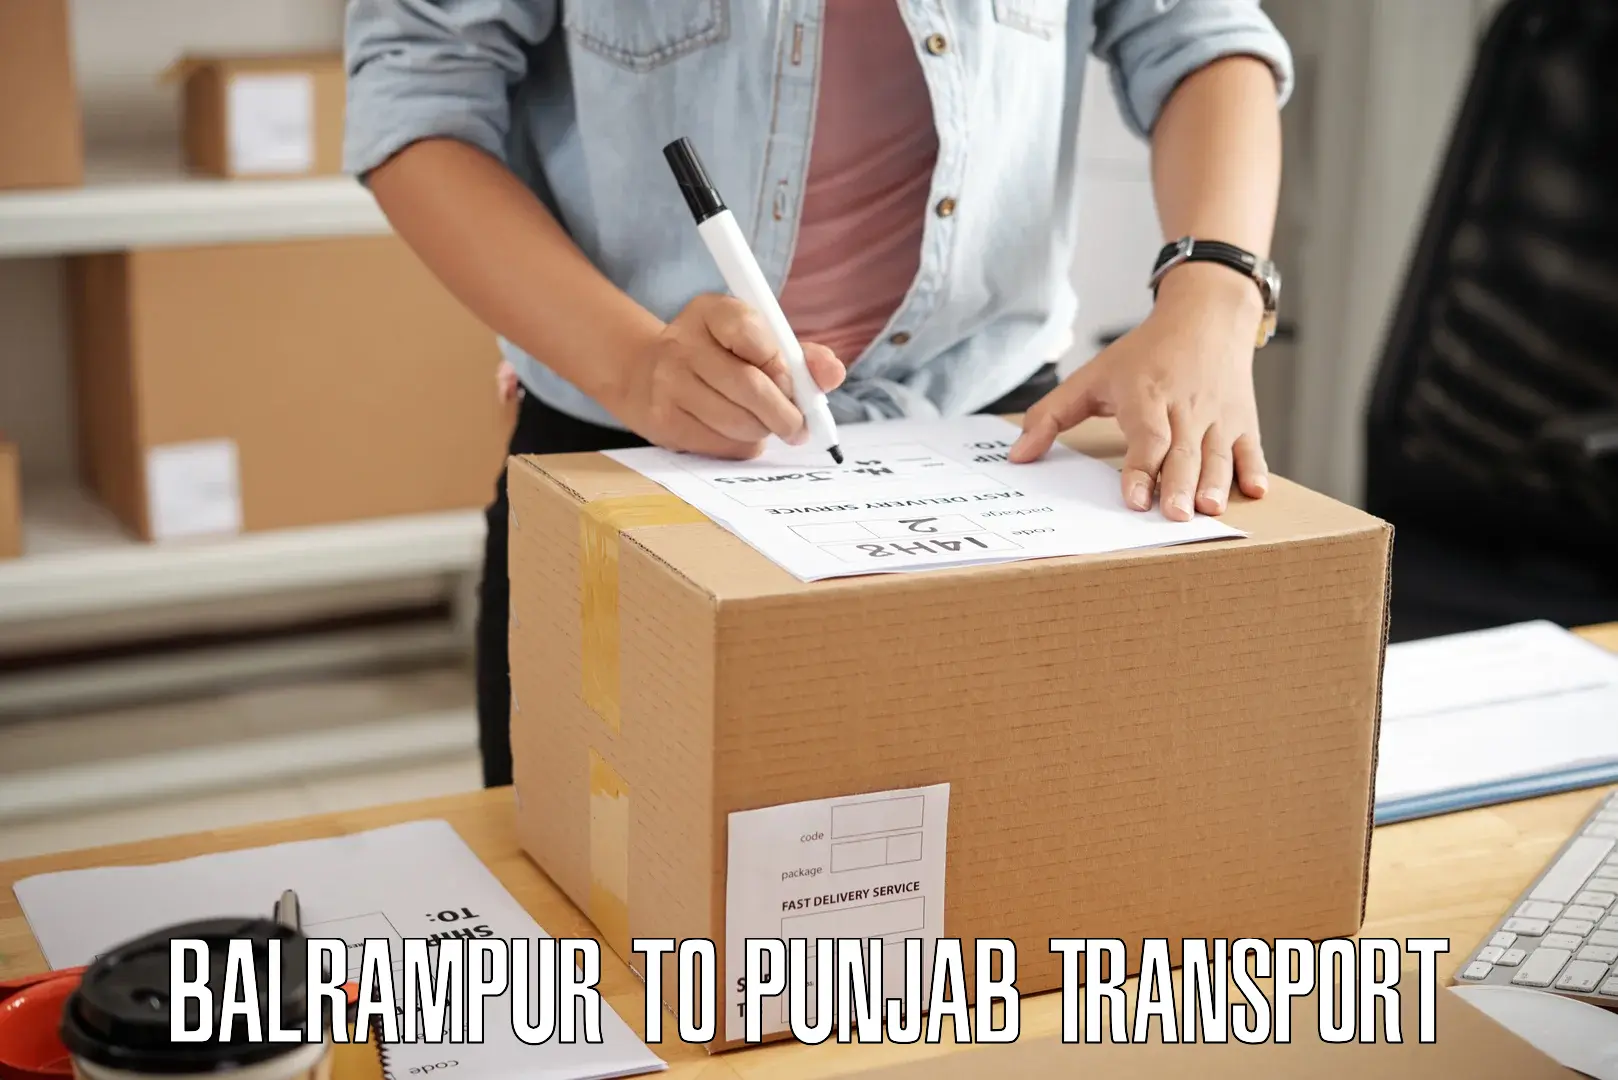 Bike transport service Balrampur to Punjab